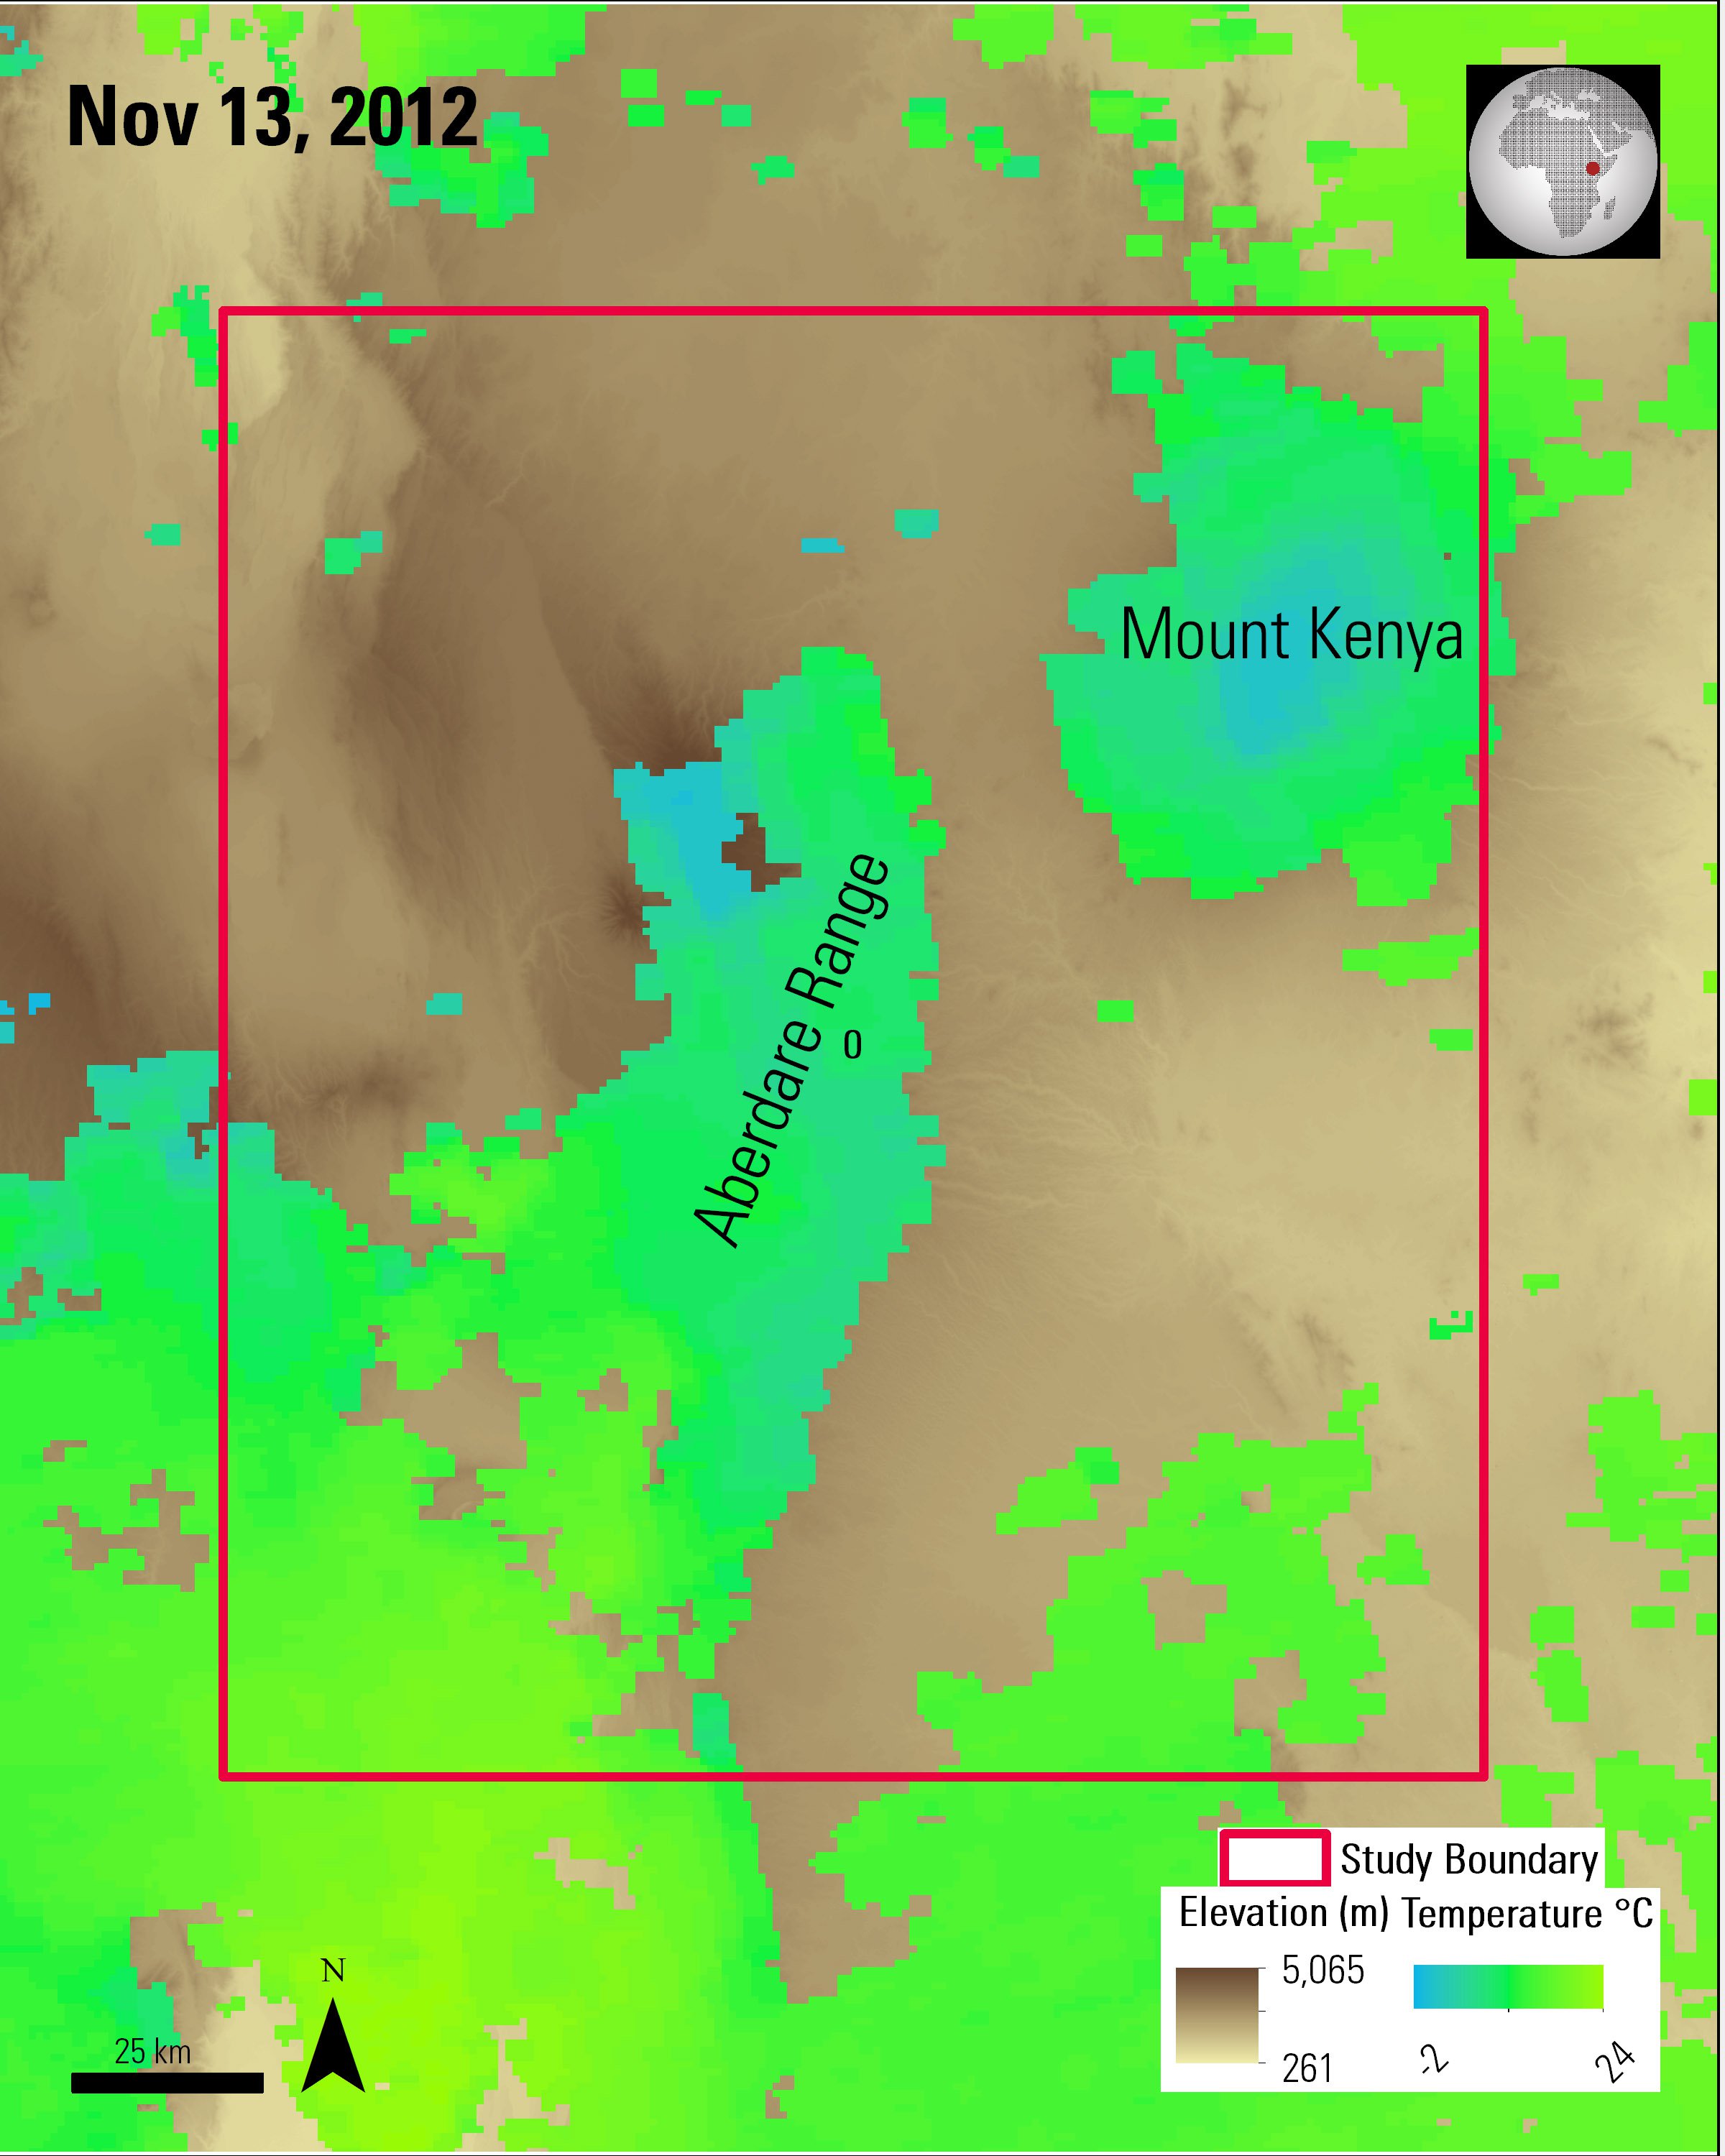 Terra MODIS nighttime LST data over Terra ASTER elevation data over Kenya.